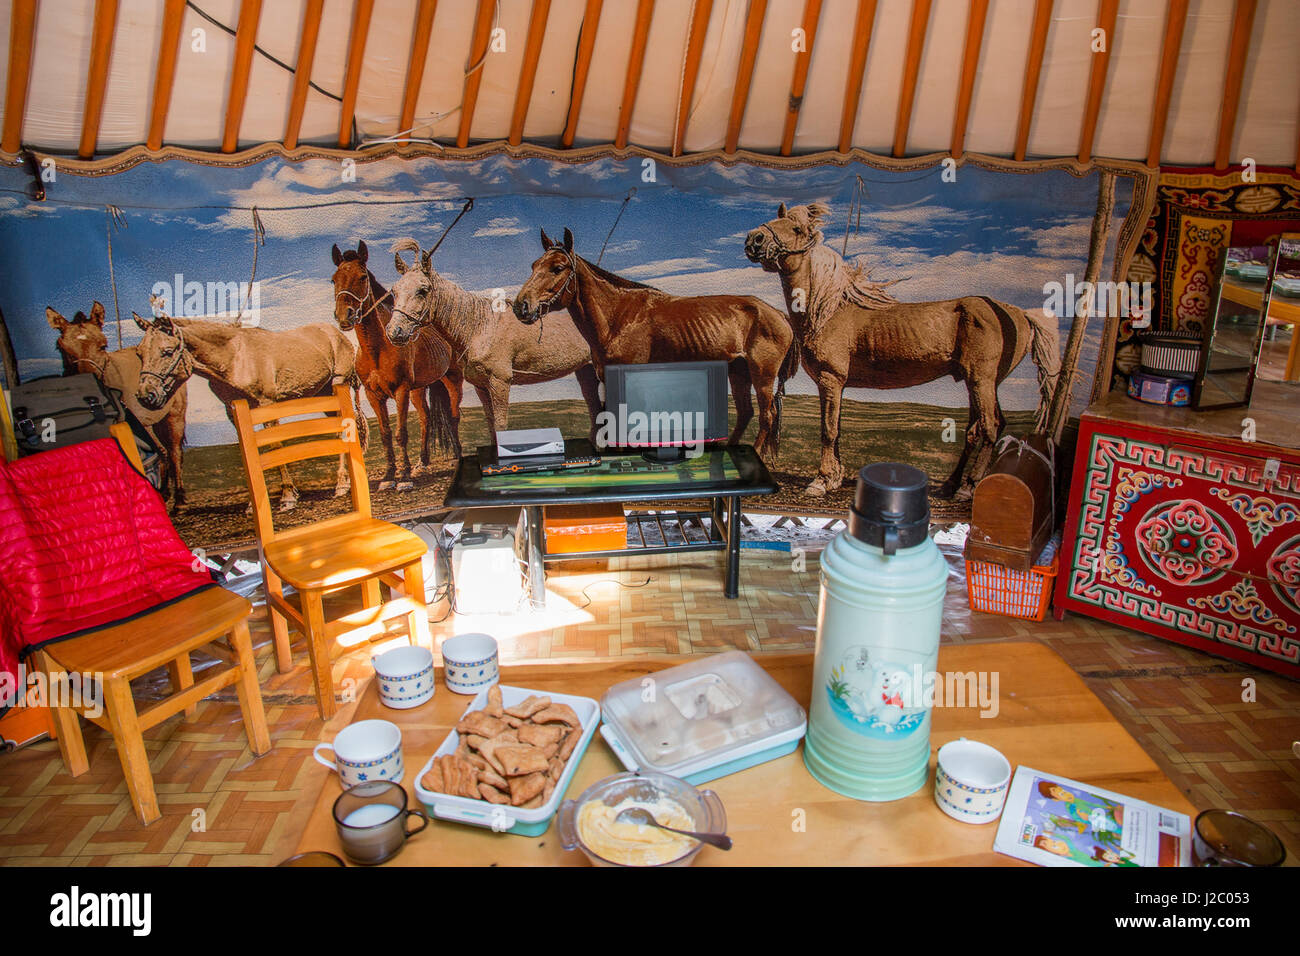 Asien, Mongolei, Hustai Nationalpark. in einer Jurte/Ger Zelt zeigt Wandbehang preisgekrönte Pferde, TV und Lebensmittel auf den Tisch. (Nur zur redaktionellen Verwendung) Stockfoto